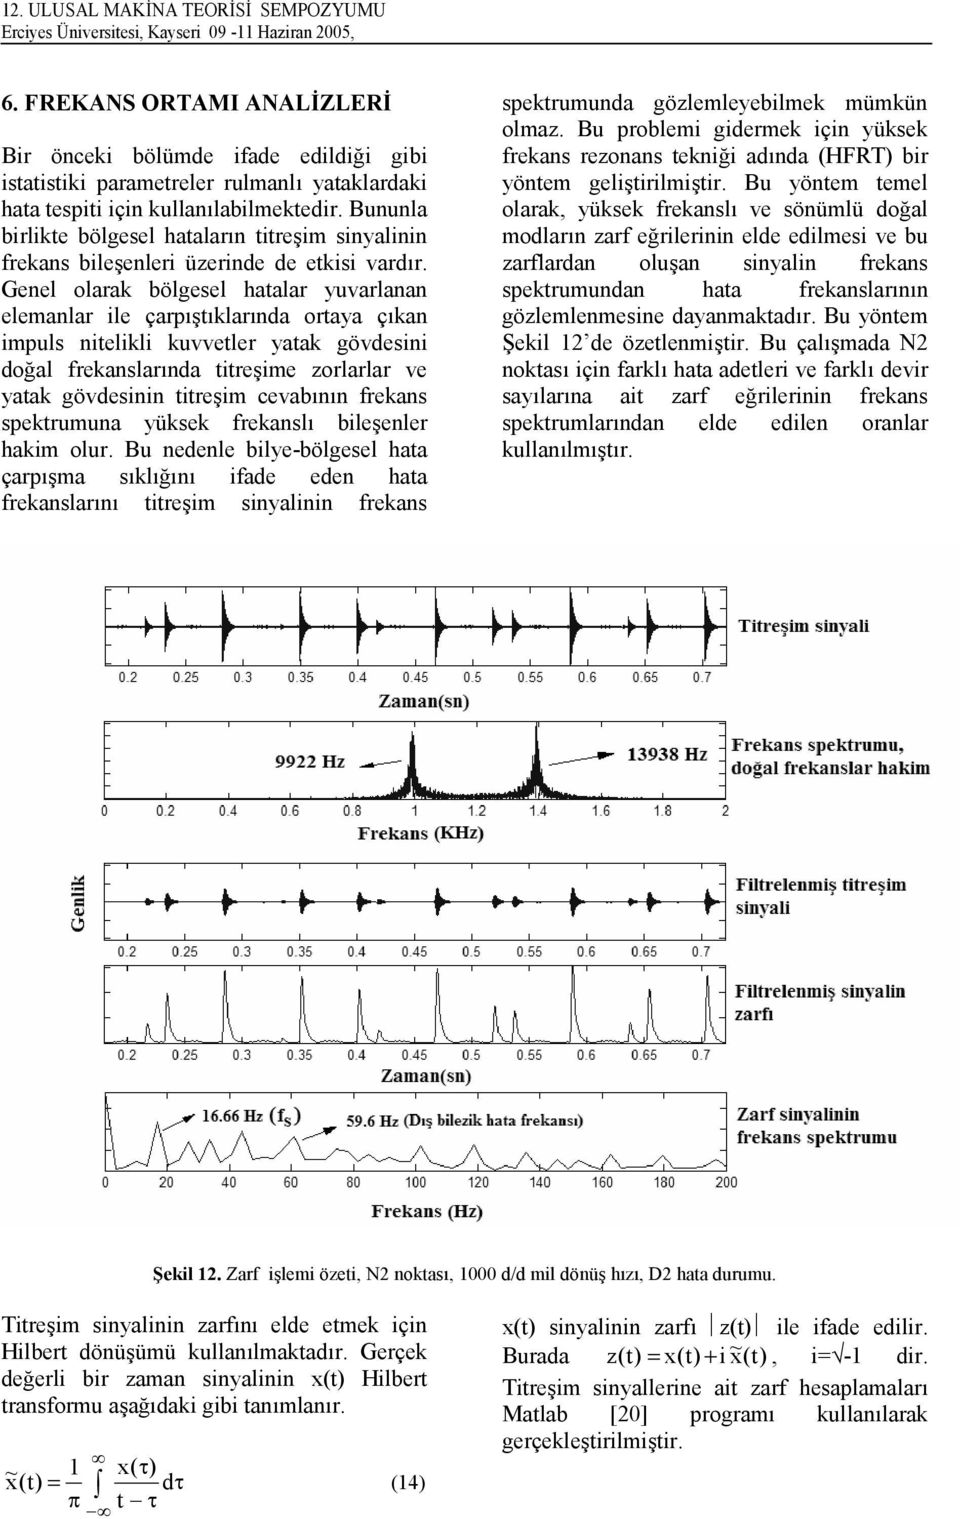 Bununla birlikte bölgesel hatalar;n titre>im sinyalinin frekans bile>enleri üzerinde de etkisi vard;r.